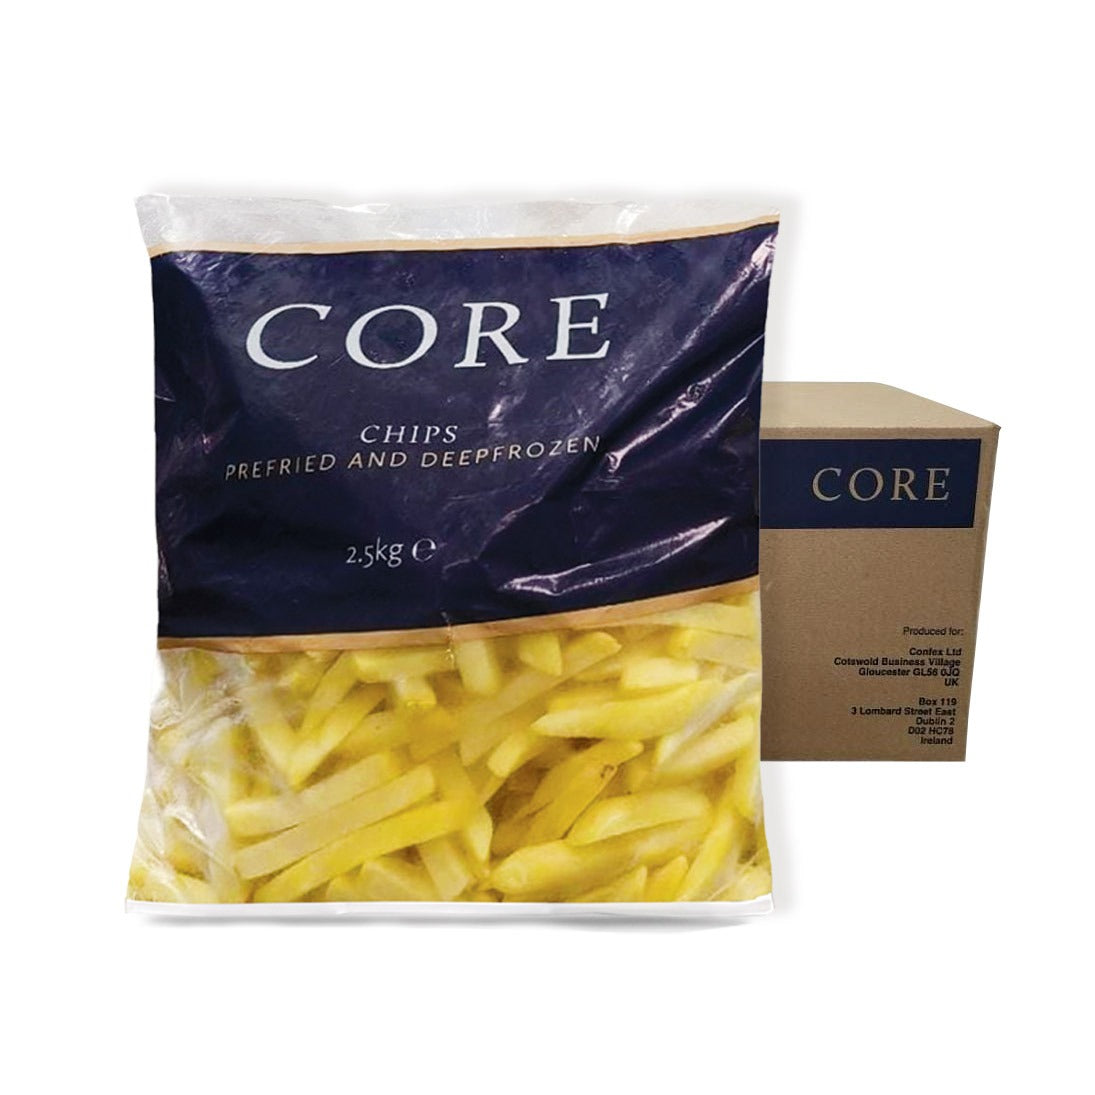 Core Fries 2.5kg